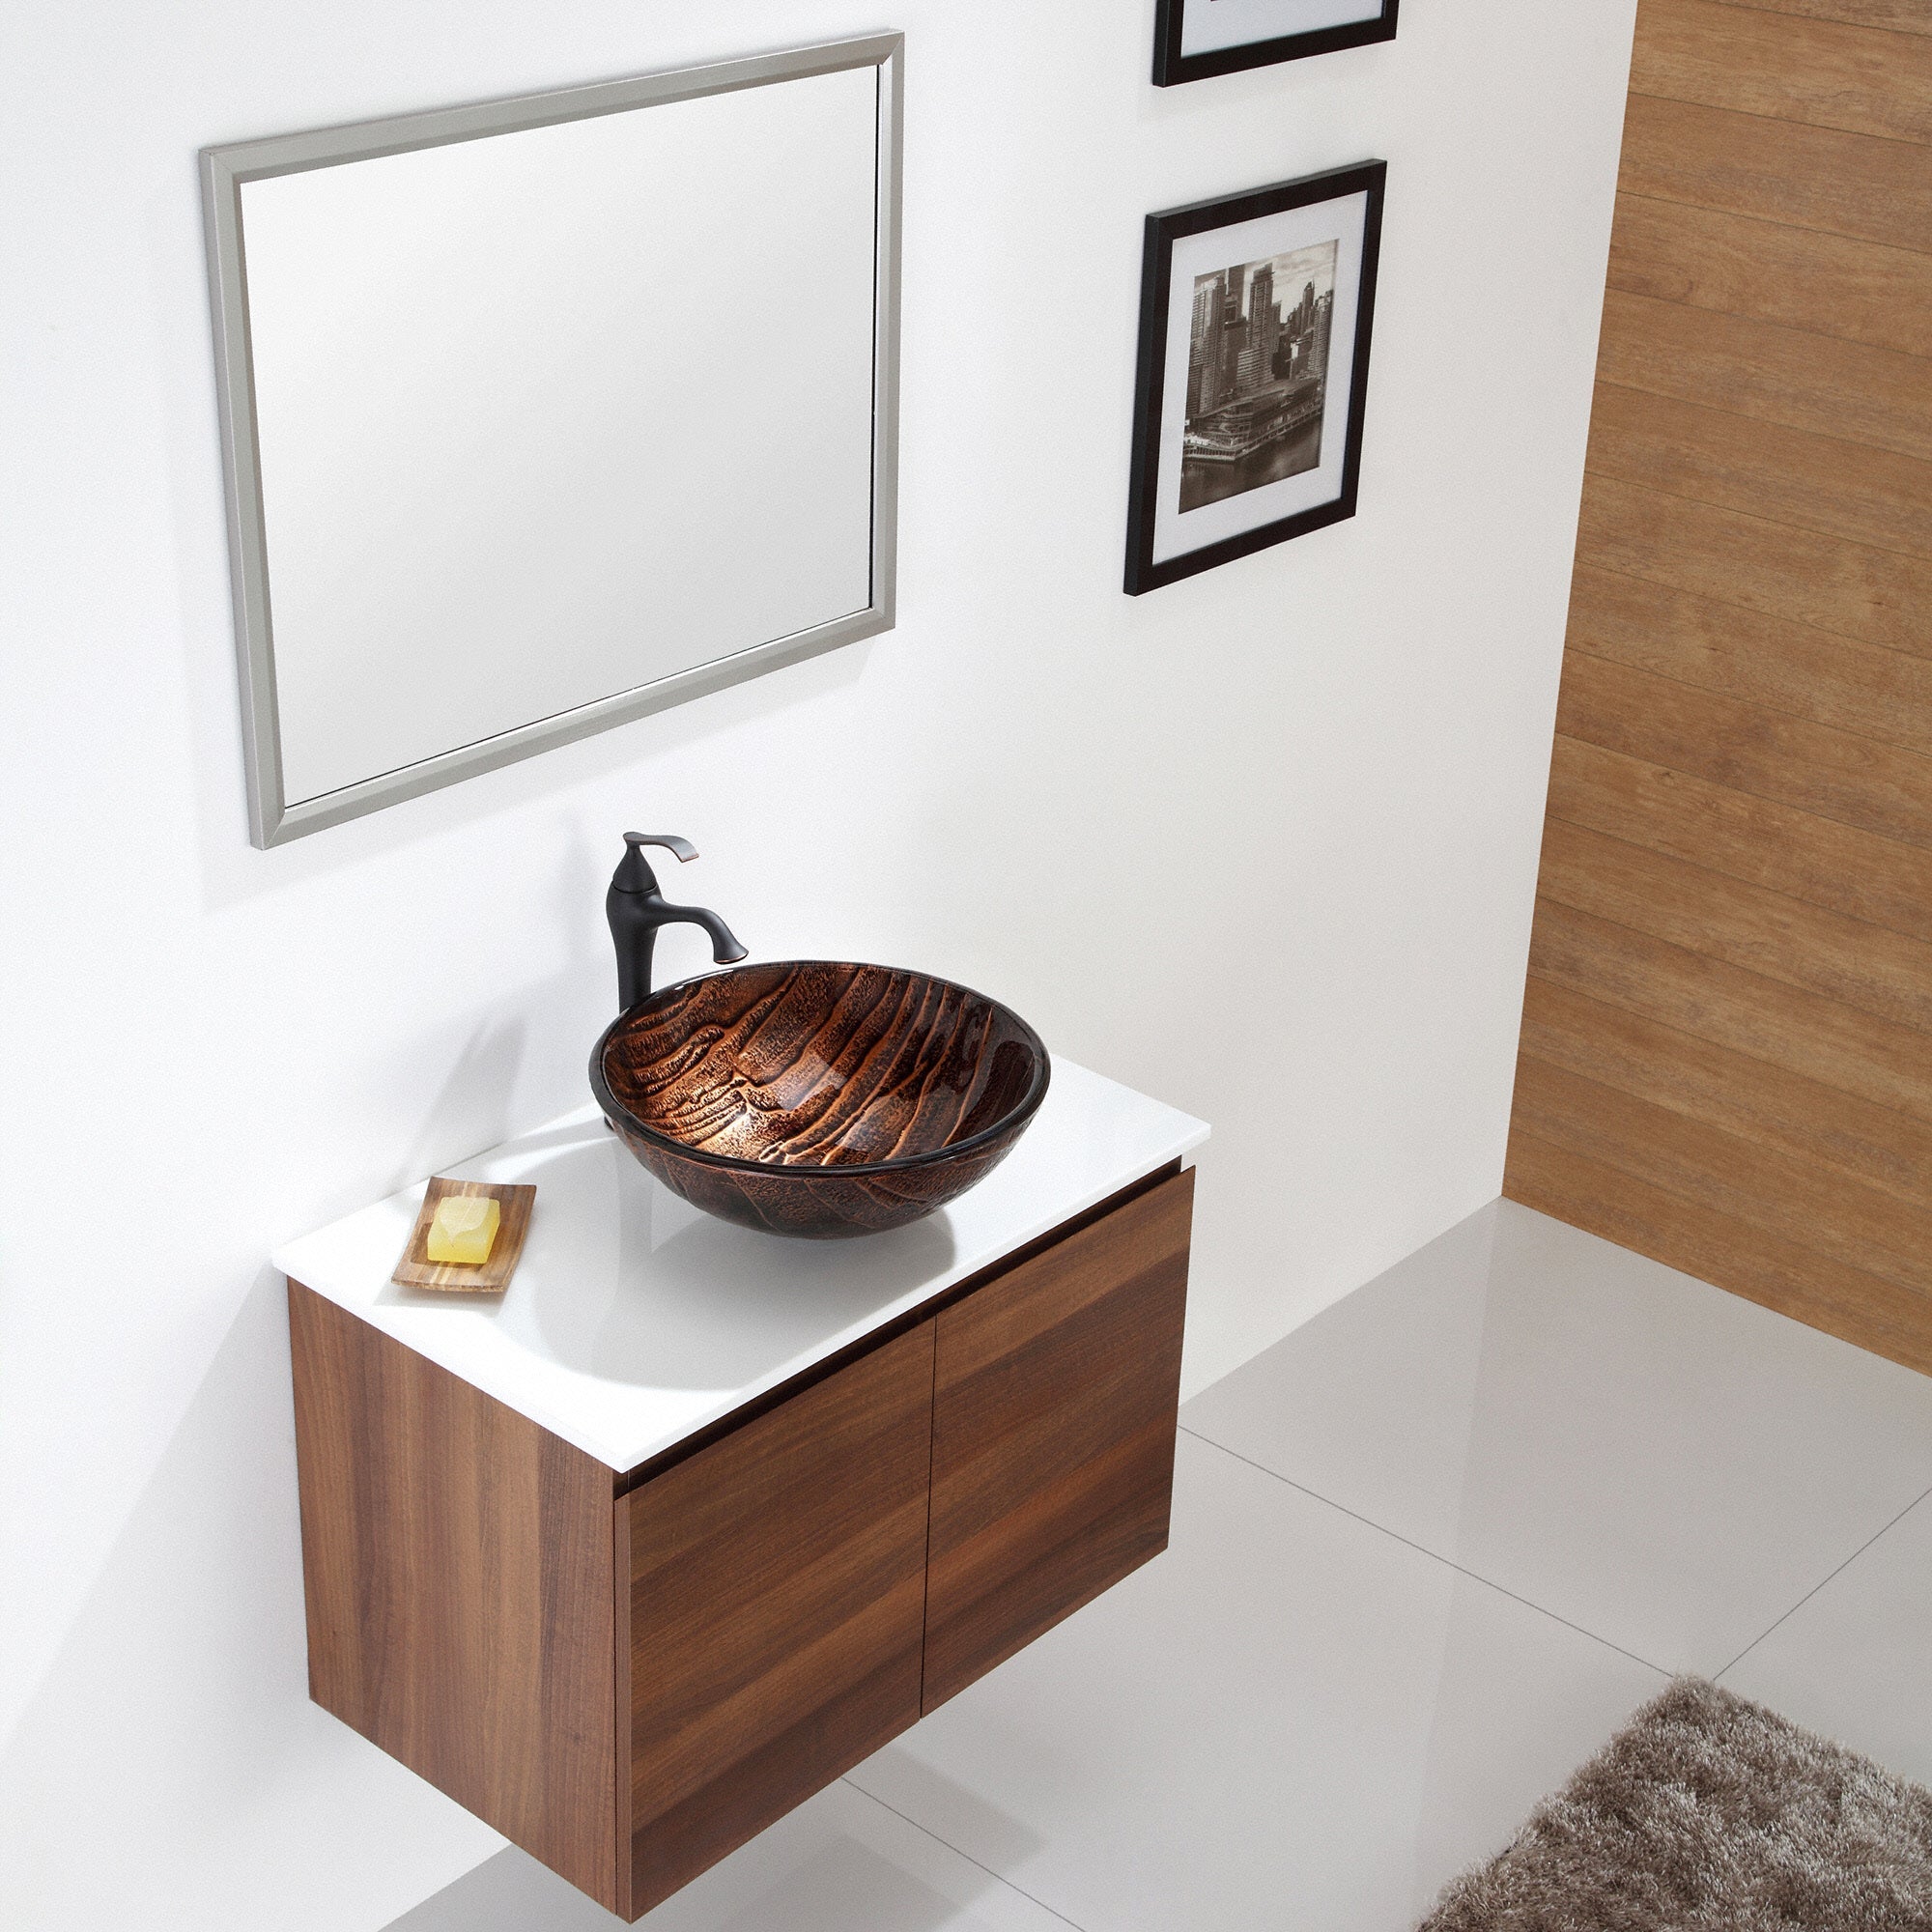 KRAUS Gaia Glass Vessel Sink in Brown-Bathroom Sinks-DirectSinks